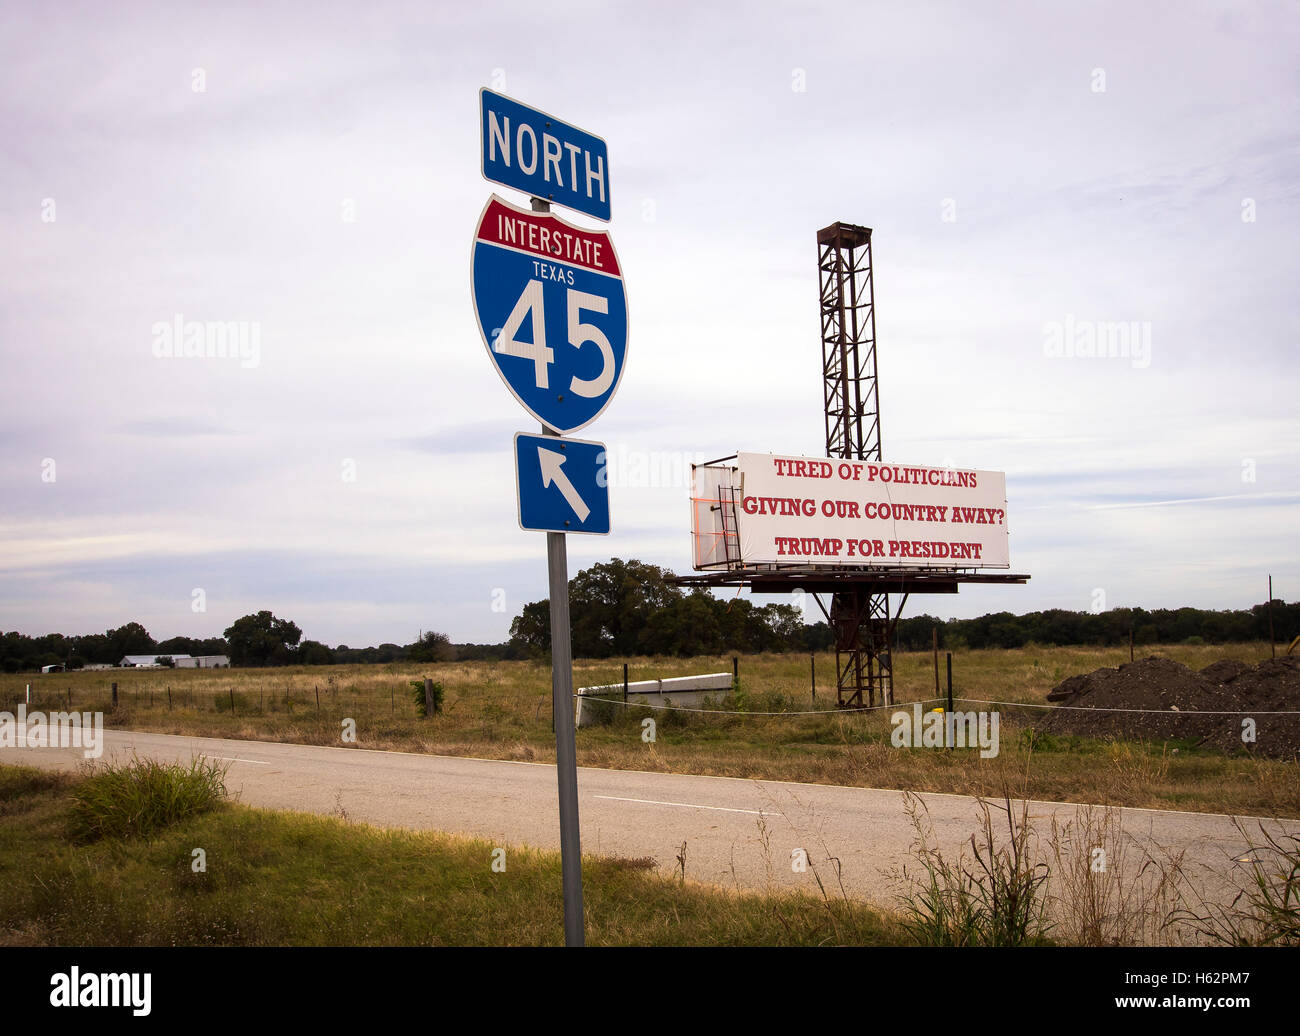 Corsicana, Texas, USA - 23. Oktober 2016 - entlang der belebten Interstate 45 zwischen Dallas und Houston Texas Trump für Präsidenten unterstützt post eine Plakatwand für Autofahrer zu sehen. Einen Geschäftsmann über Politiker zu fördern. Stockfoto